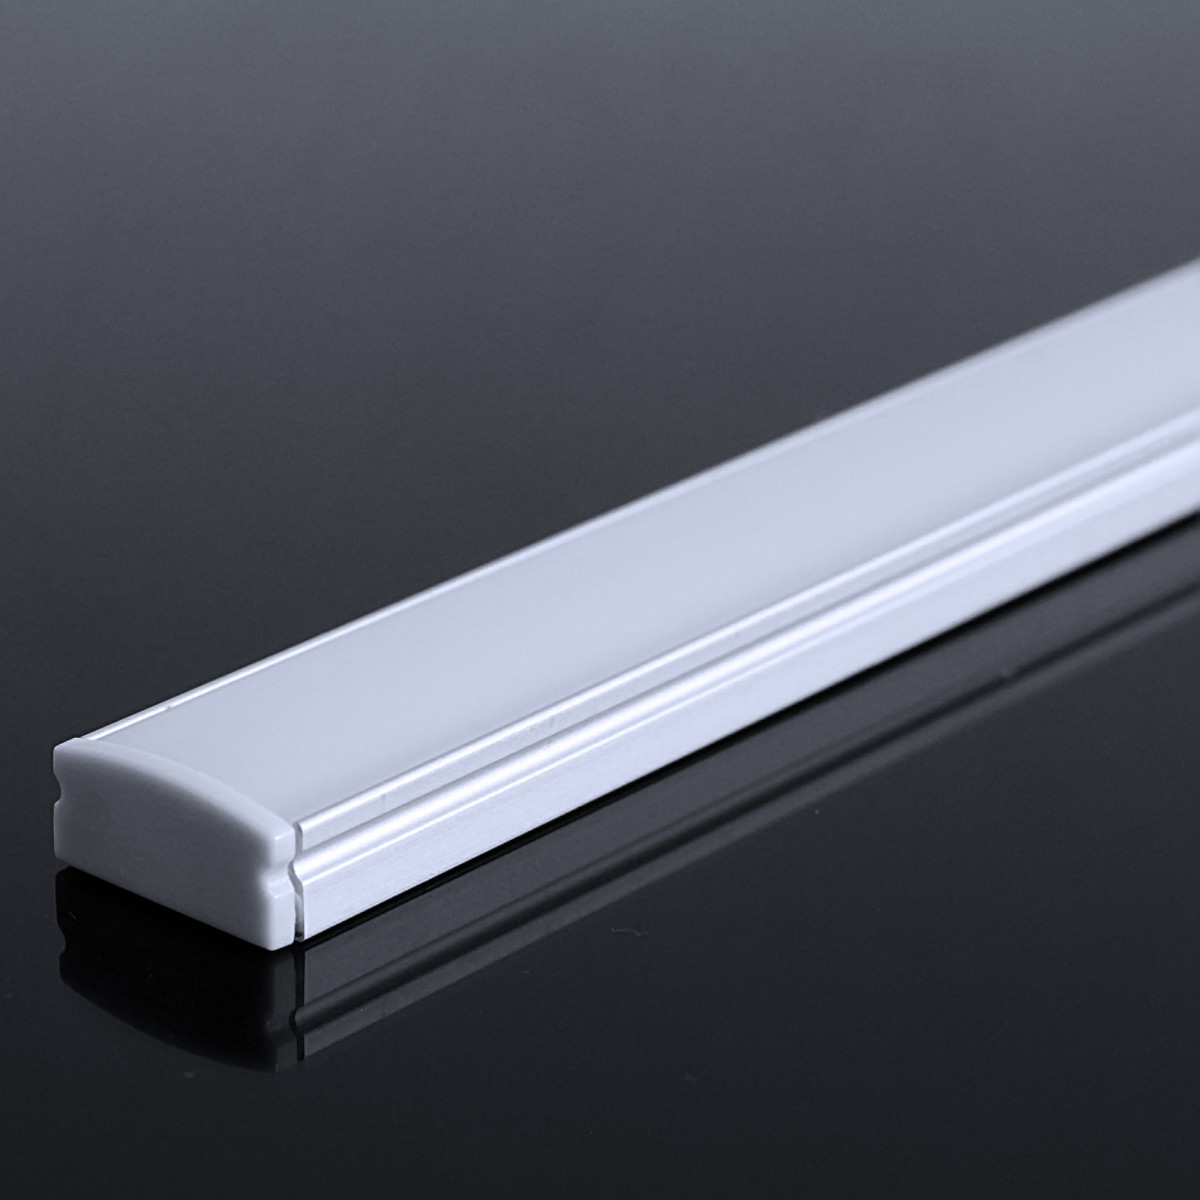 LED Flachprofil "Slim-Line" | Abdeckung diffus | Zuschnitt auf 88cm |